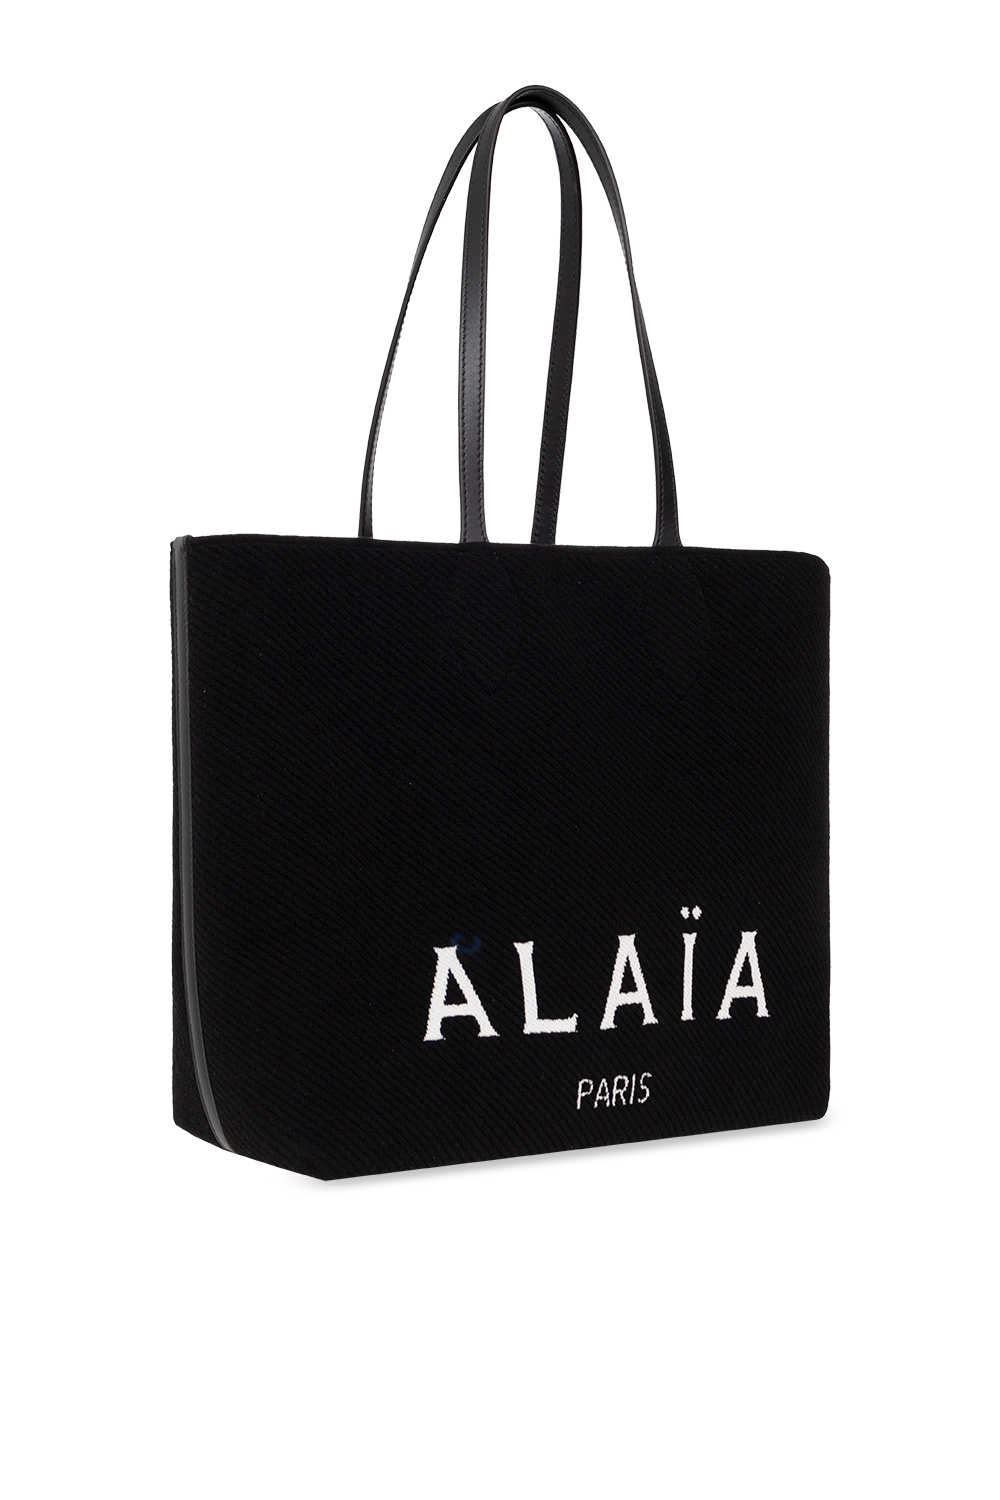 Alaïa Shopper TOTE bag